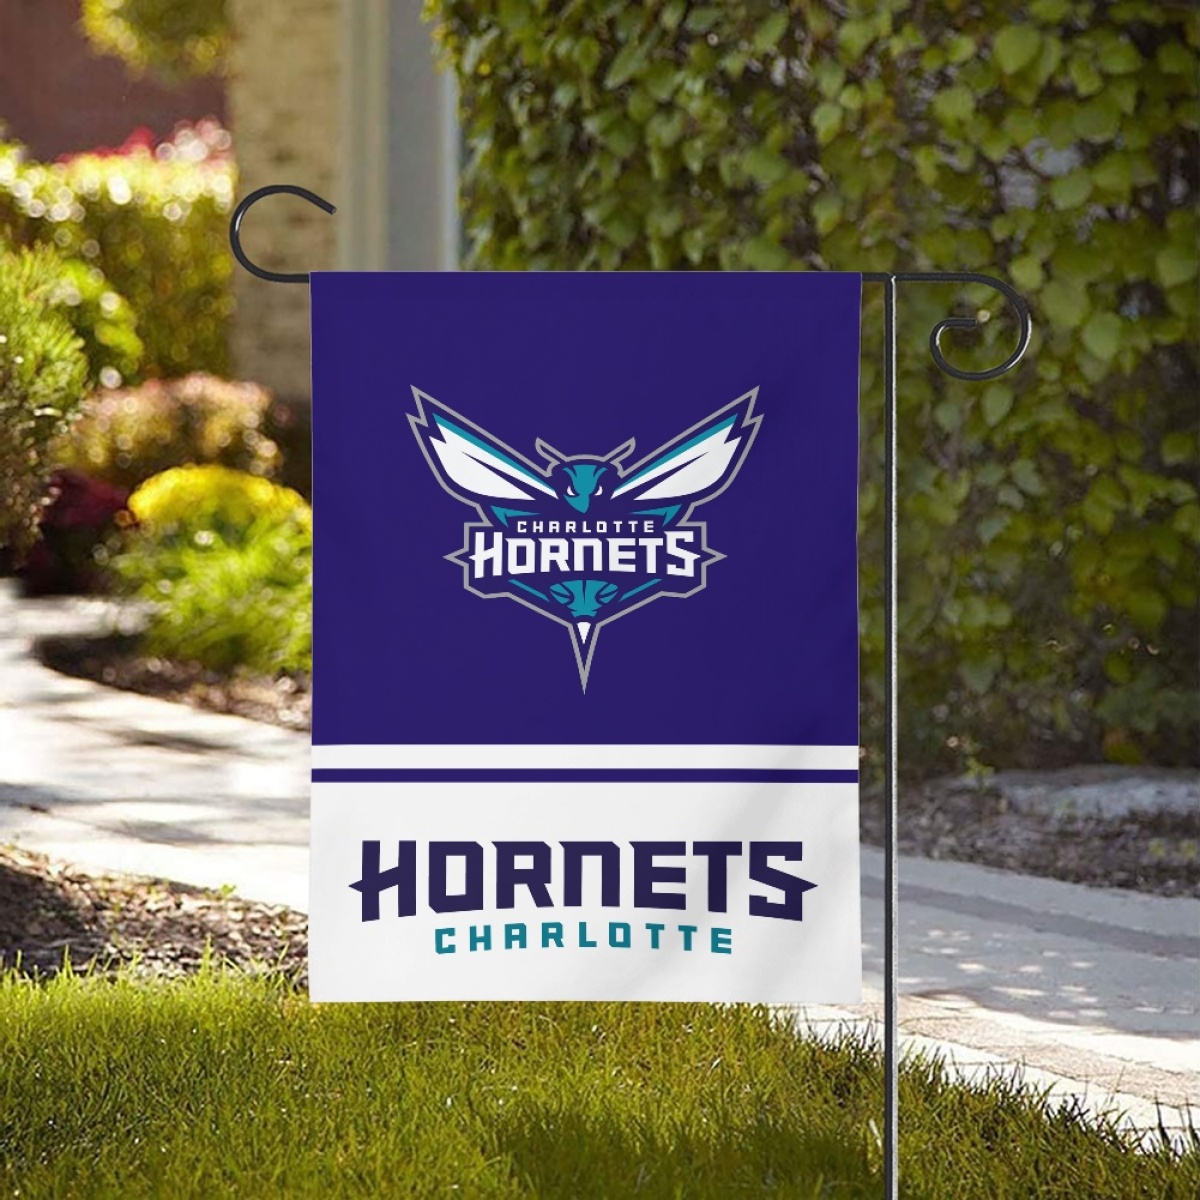 Charlotte Hornets Double-Sided Garden Flag 001 (Pls check description for details)